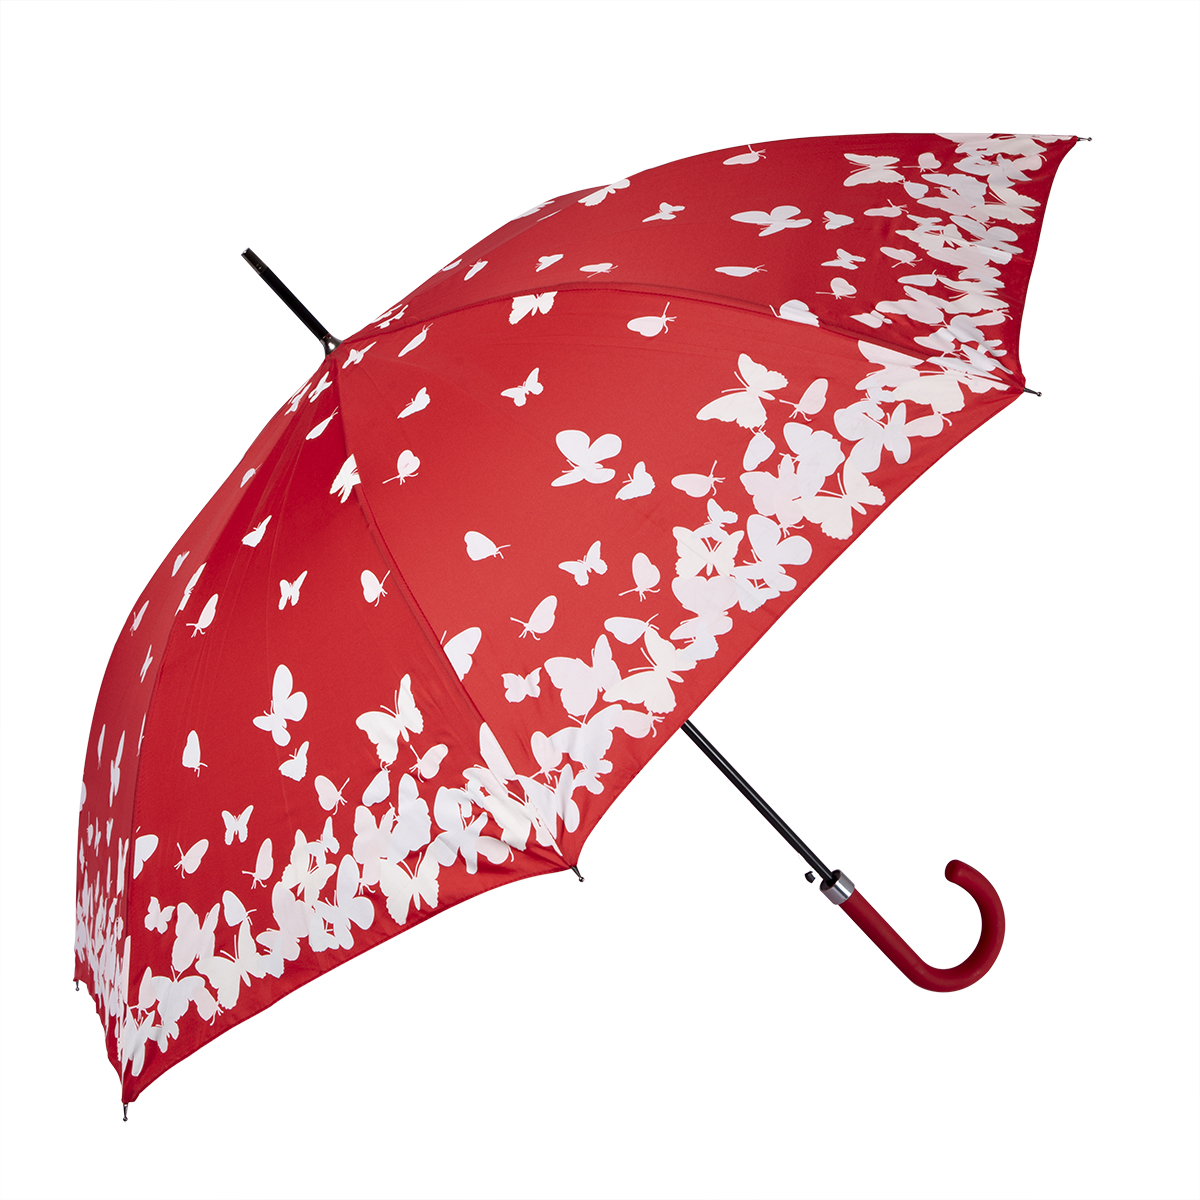 Biggbrella  So003 Butterfly Patterned Umbrella, Windproof, Waterproof 100% Pongee Polyester Fabric, 23ÃƒÆ’Ã‚Â¢ÃƒÂ¢Ã¢â‚¬Å¡Ã‚Â¬Ãƒâ€šÃ‚Â, 8 Panel, Butterfly Patterned